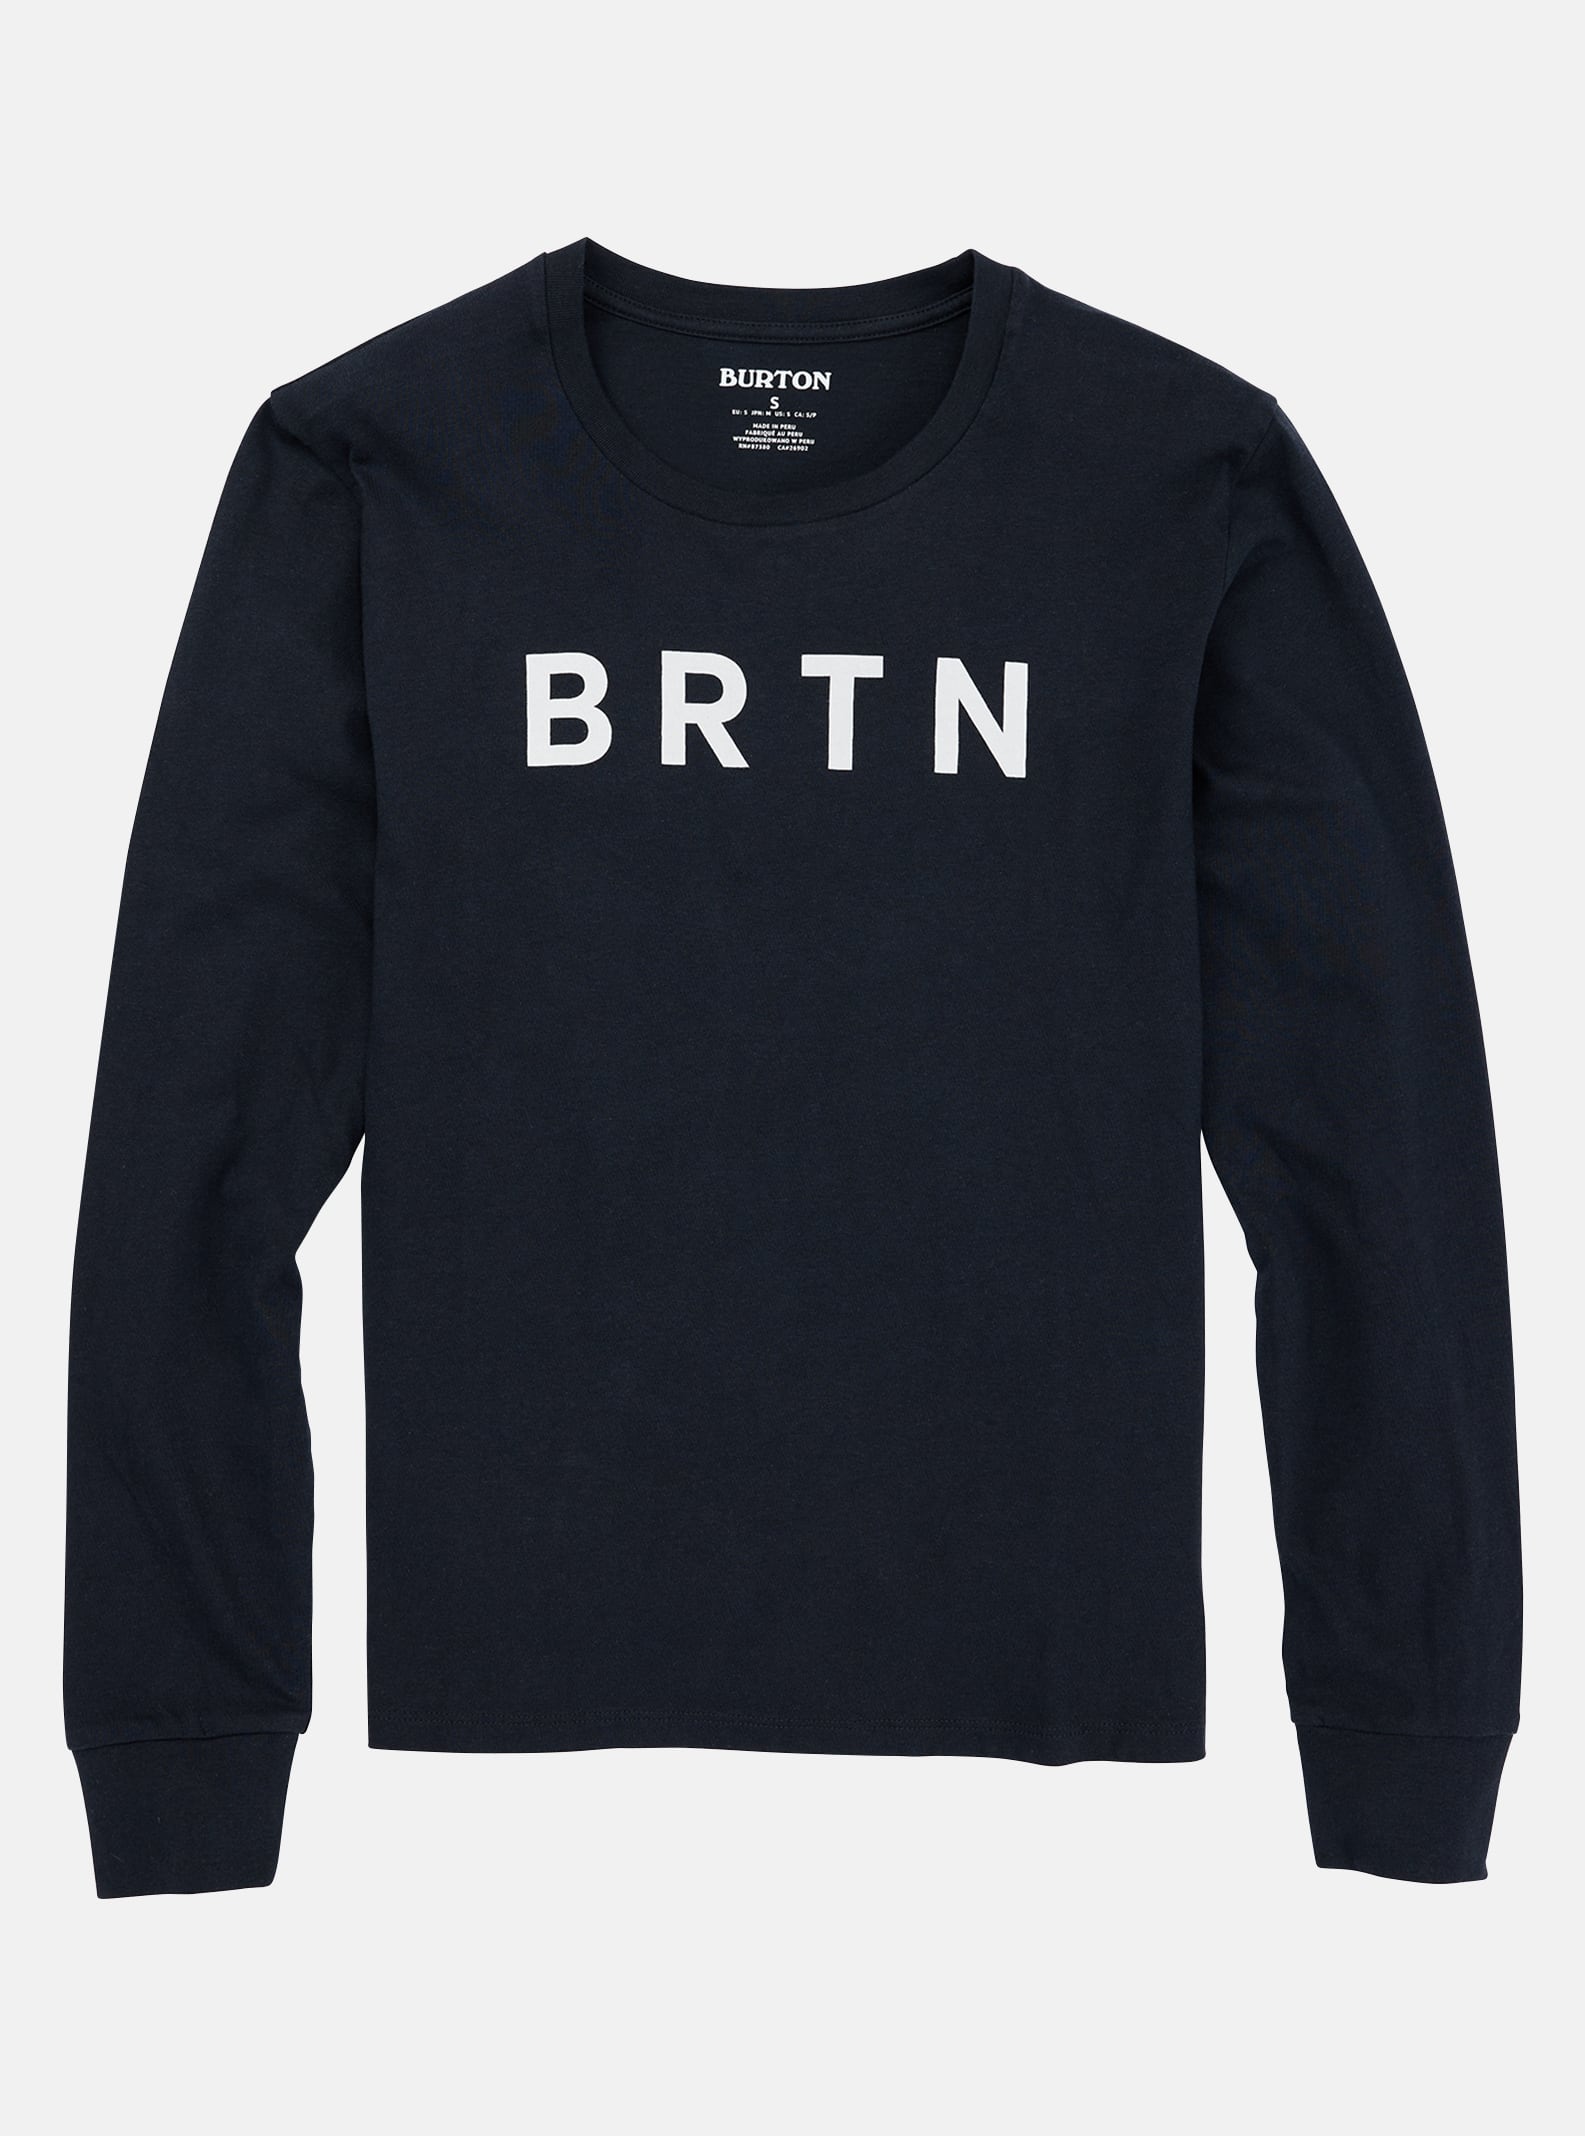 Burton - T-shirt à manches longues BRTN femme, True Black, L